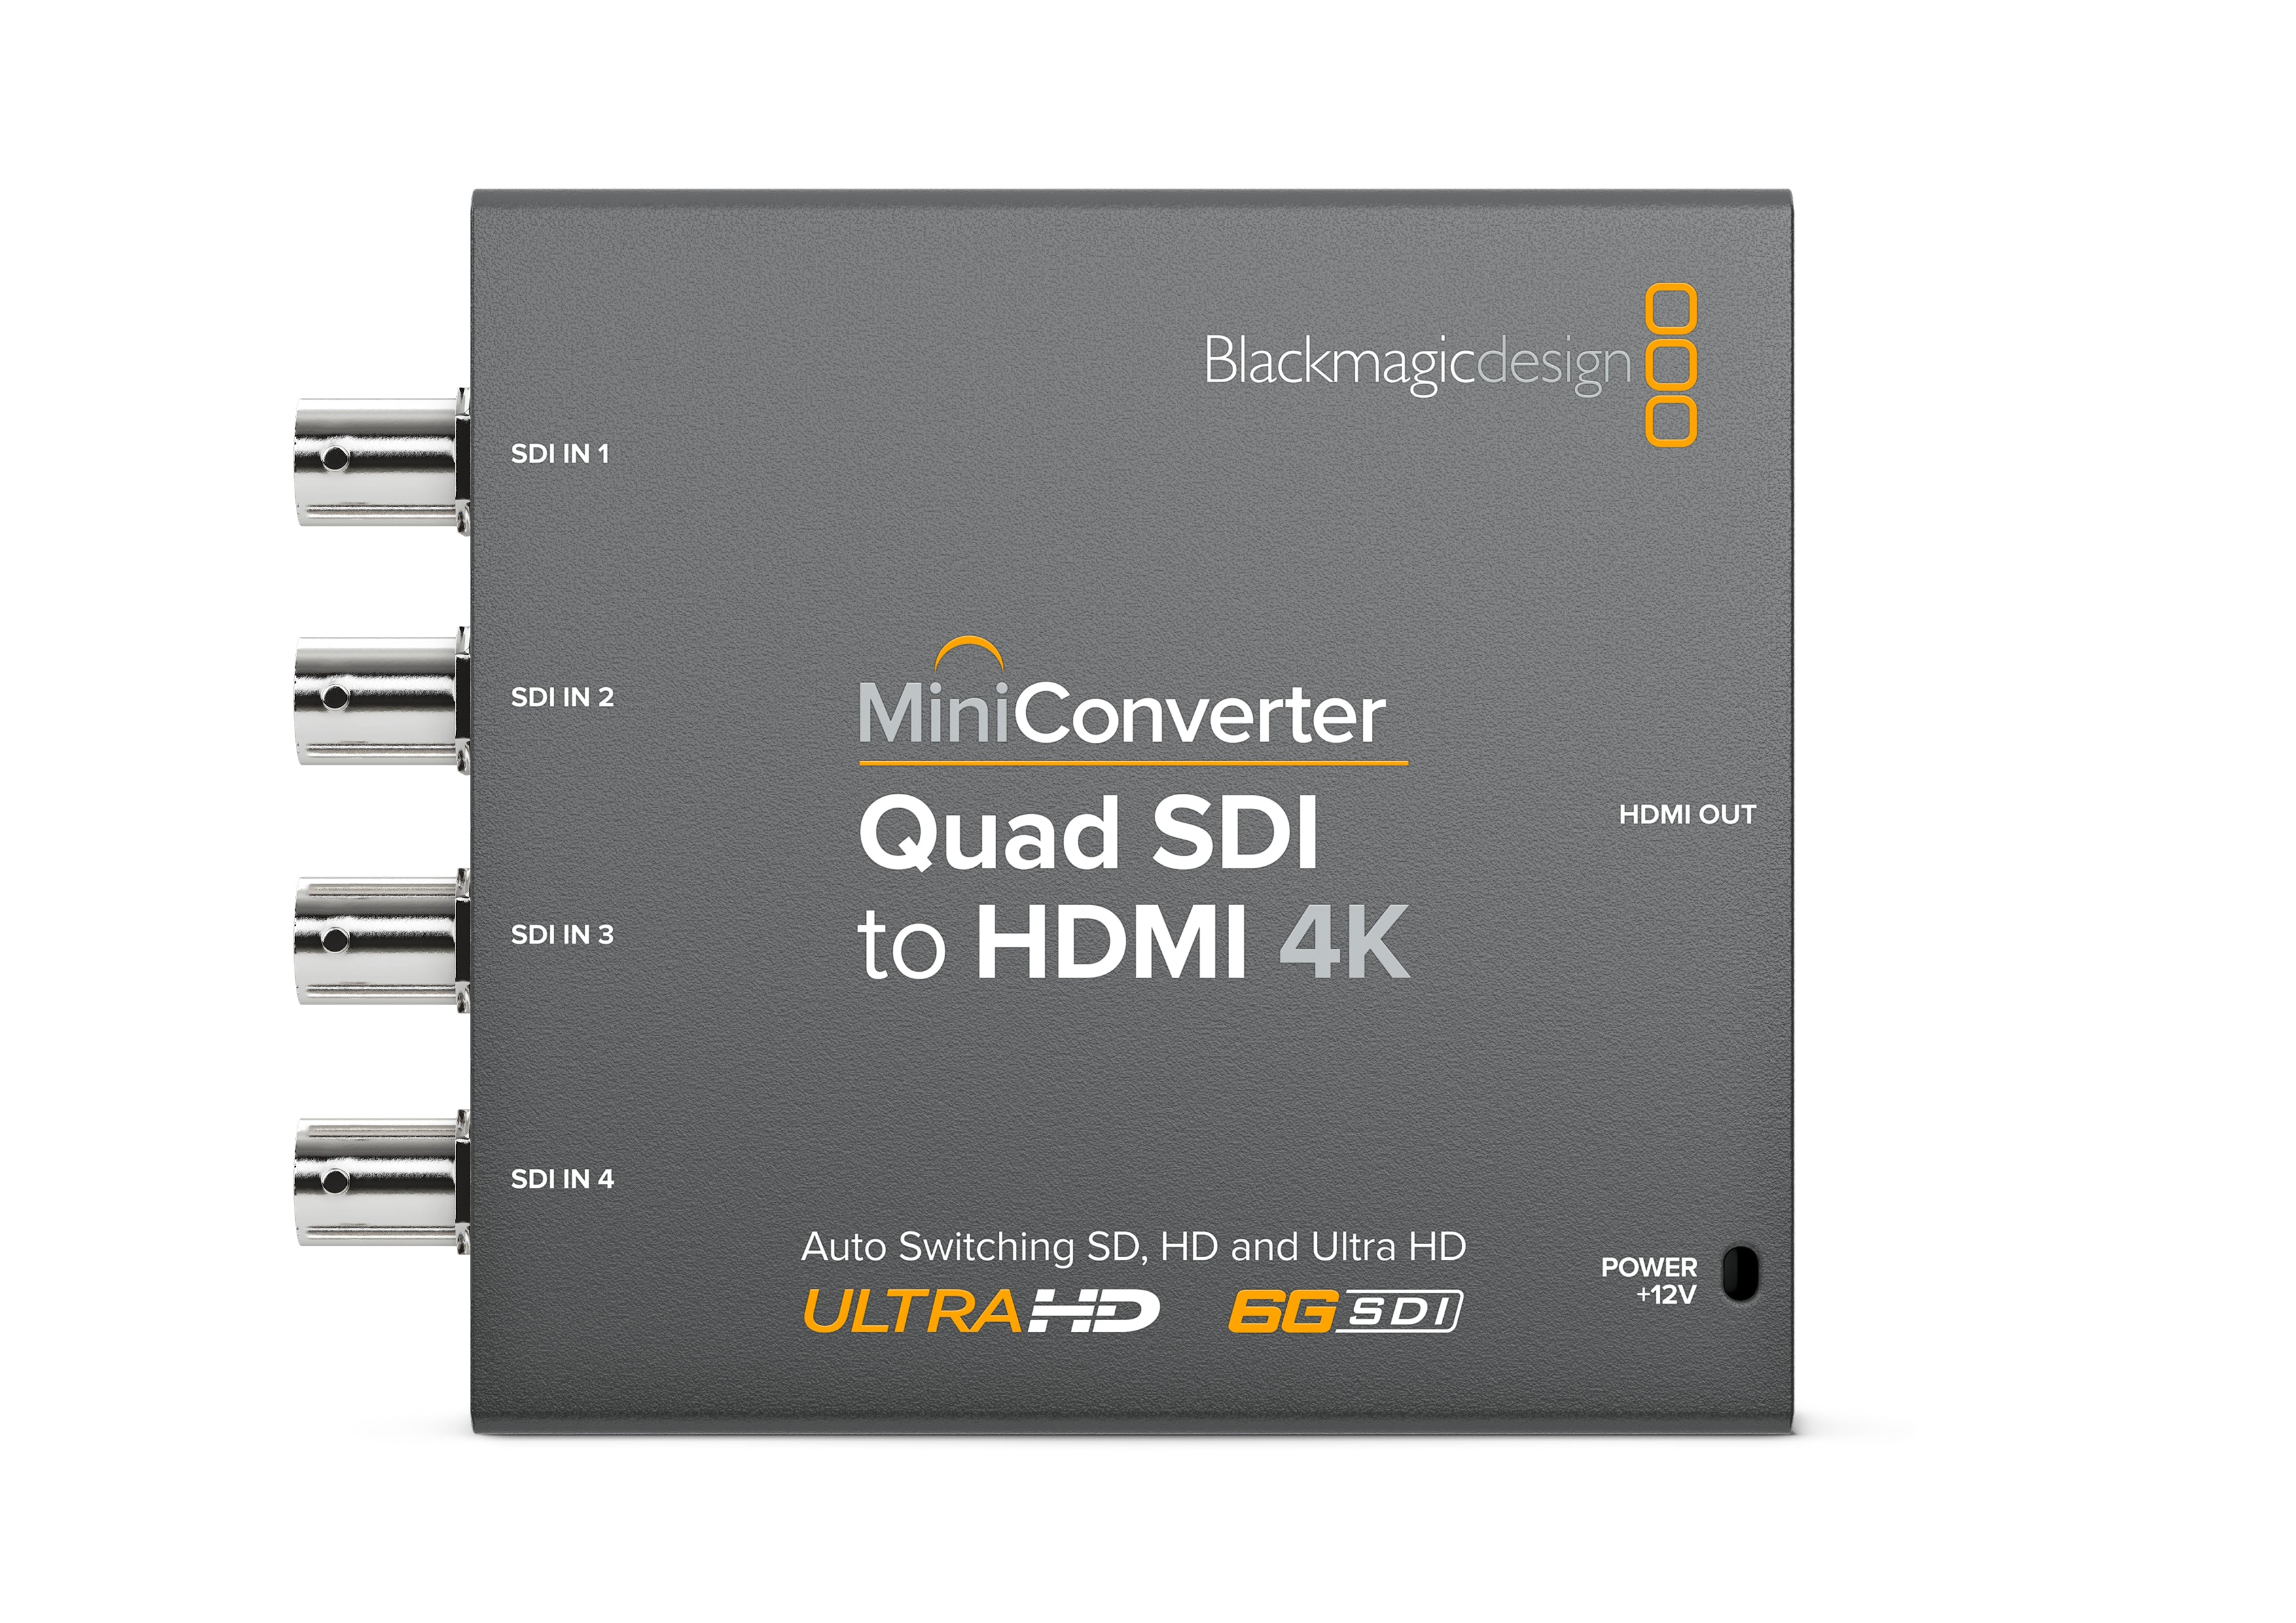 Mini Converter Quad SDI to HDMI 4K